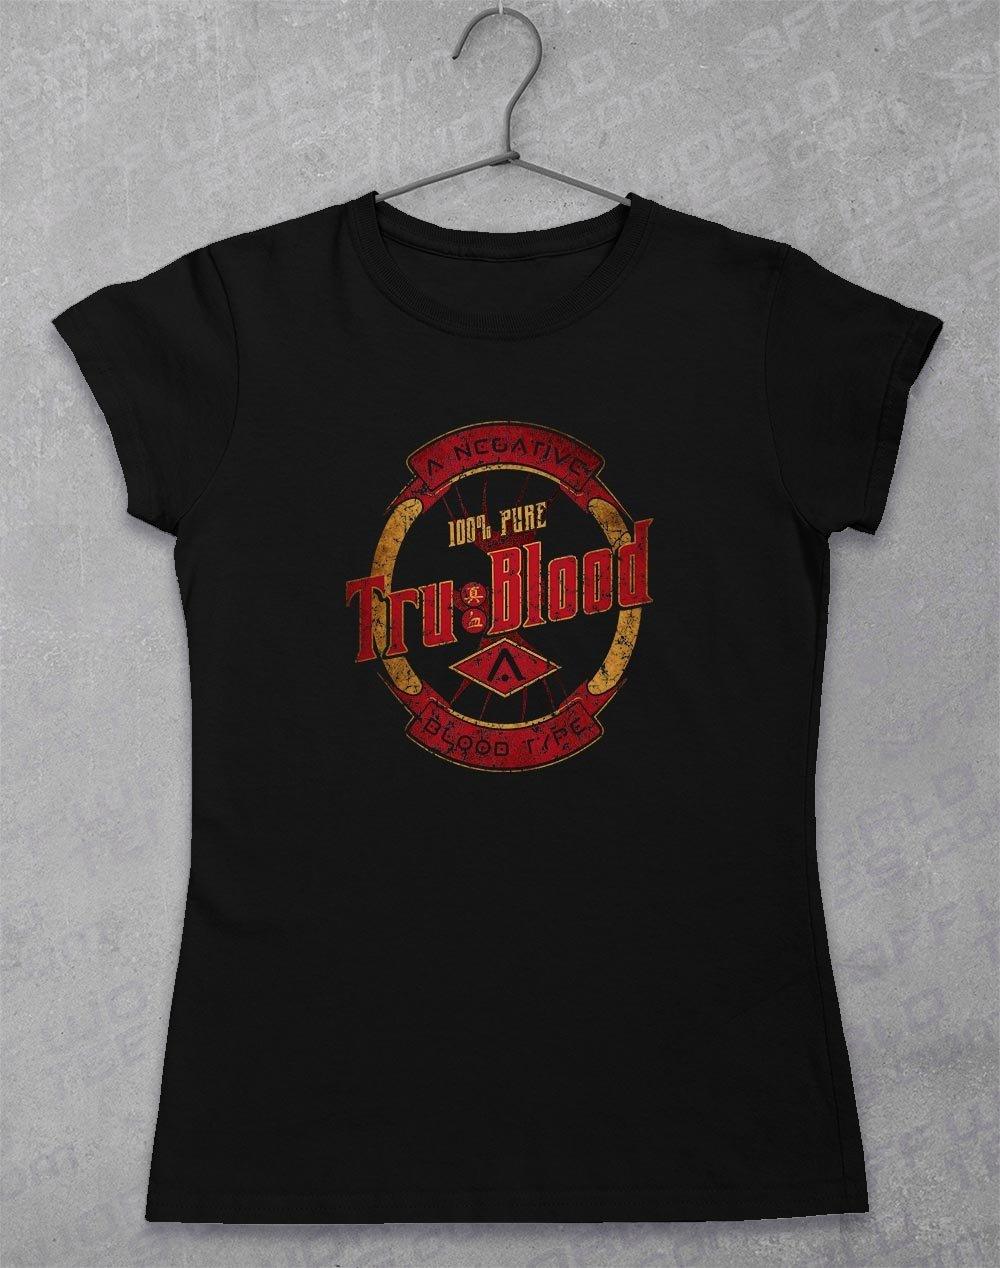 Tru Blood - Women's T-Shirt 8-10 / Black  - Off World Tees